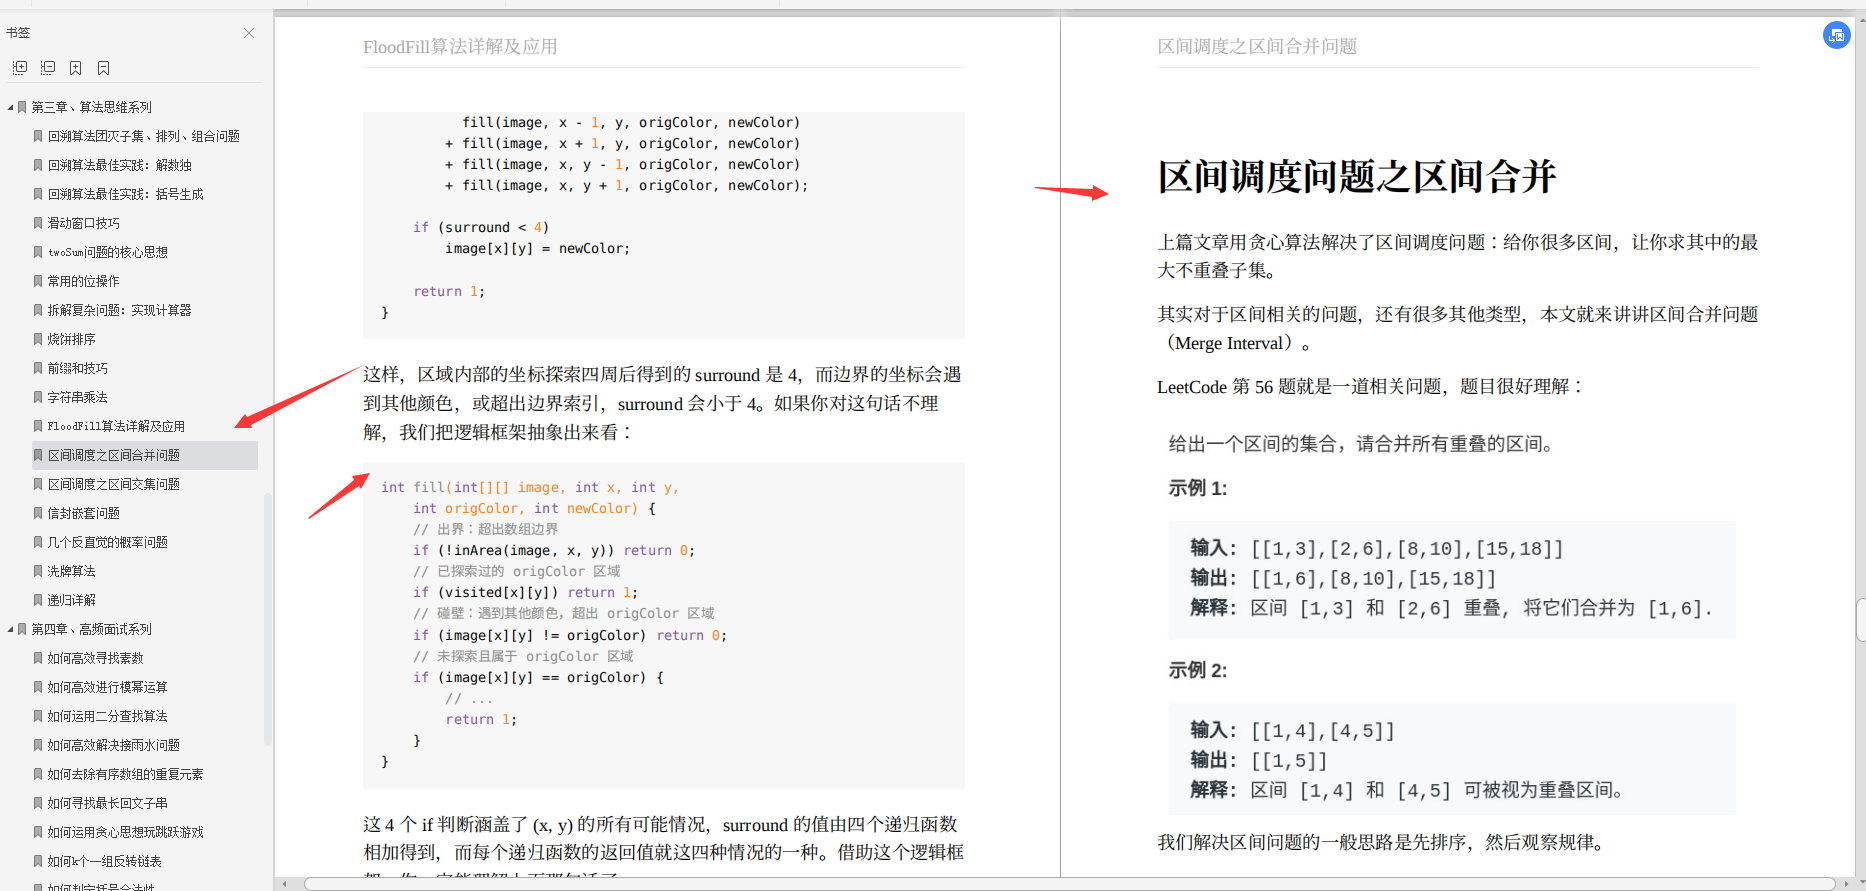 El primer lanzamiento de Alibaba: libro de algoritmos de nivel maestro, suficiente para destruir LeetCode